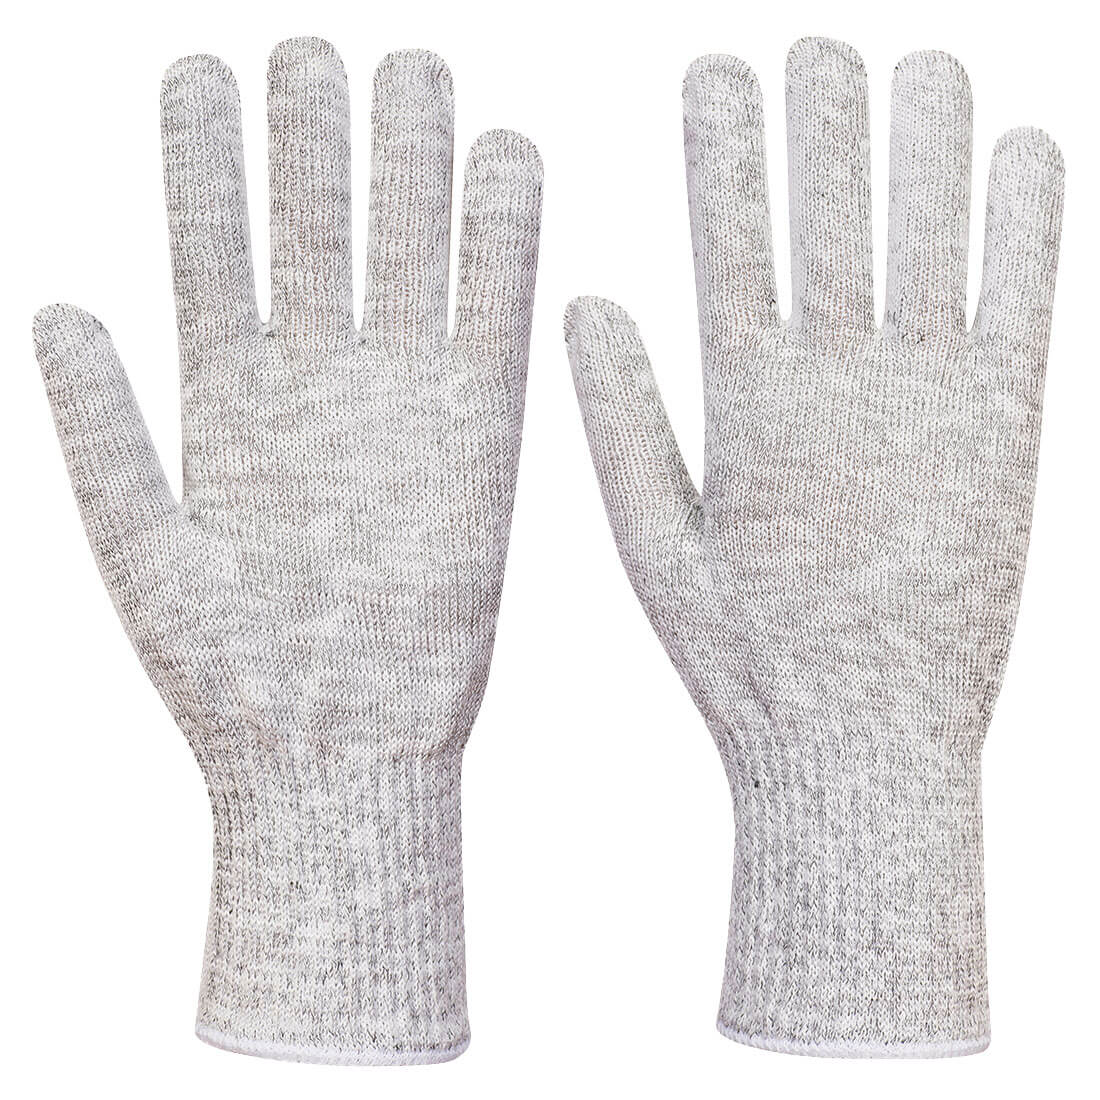 AHR 10 Food Glove Liner – 1 glove